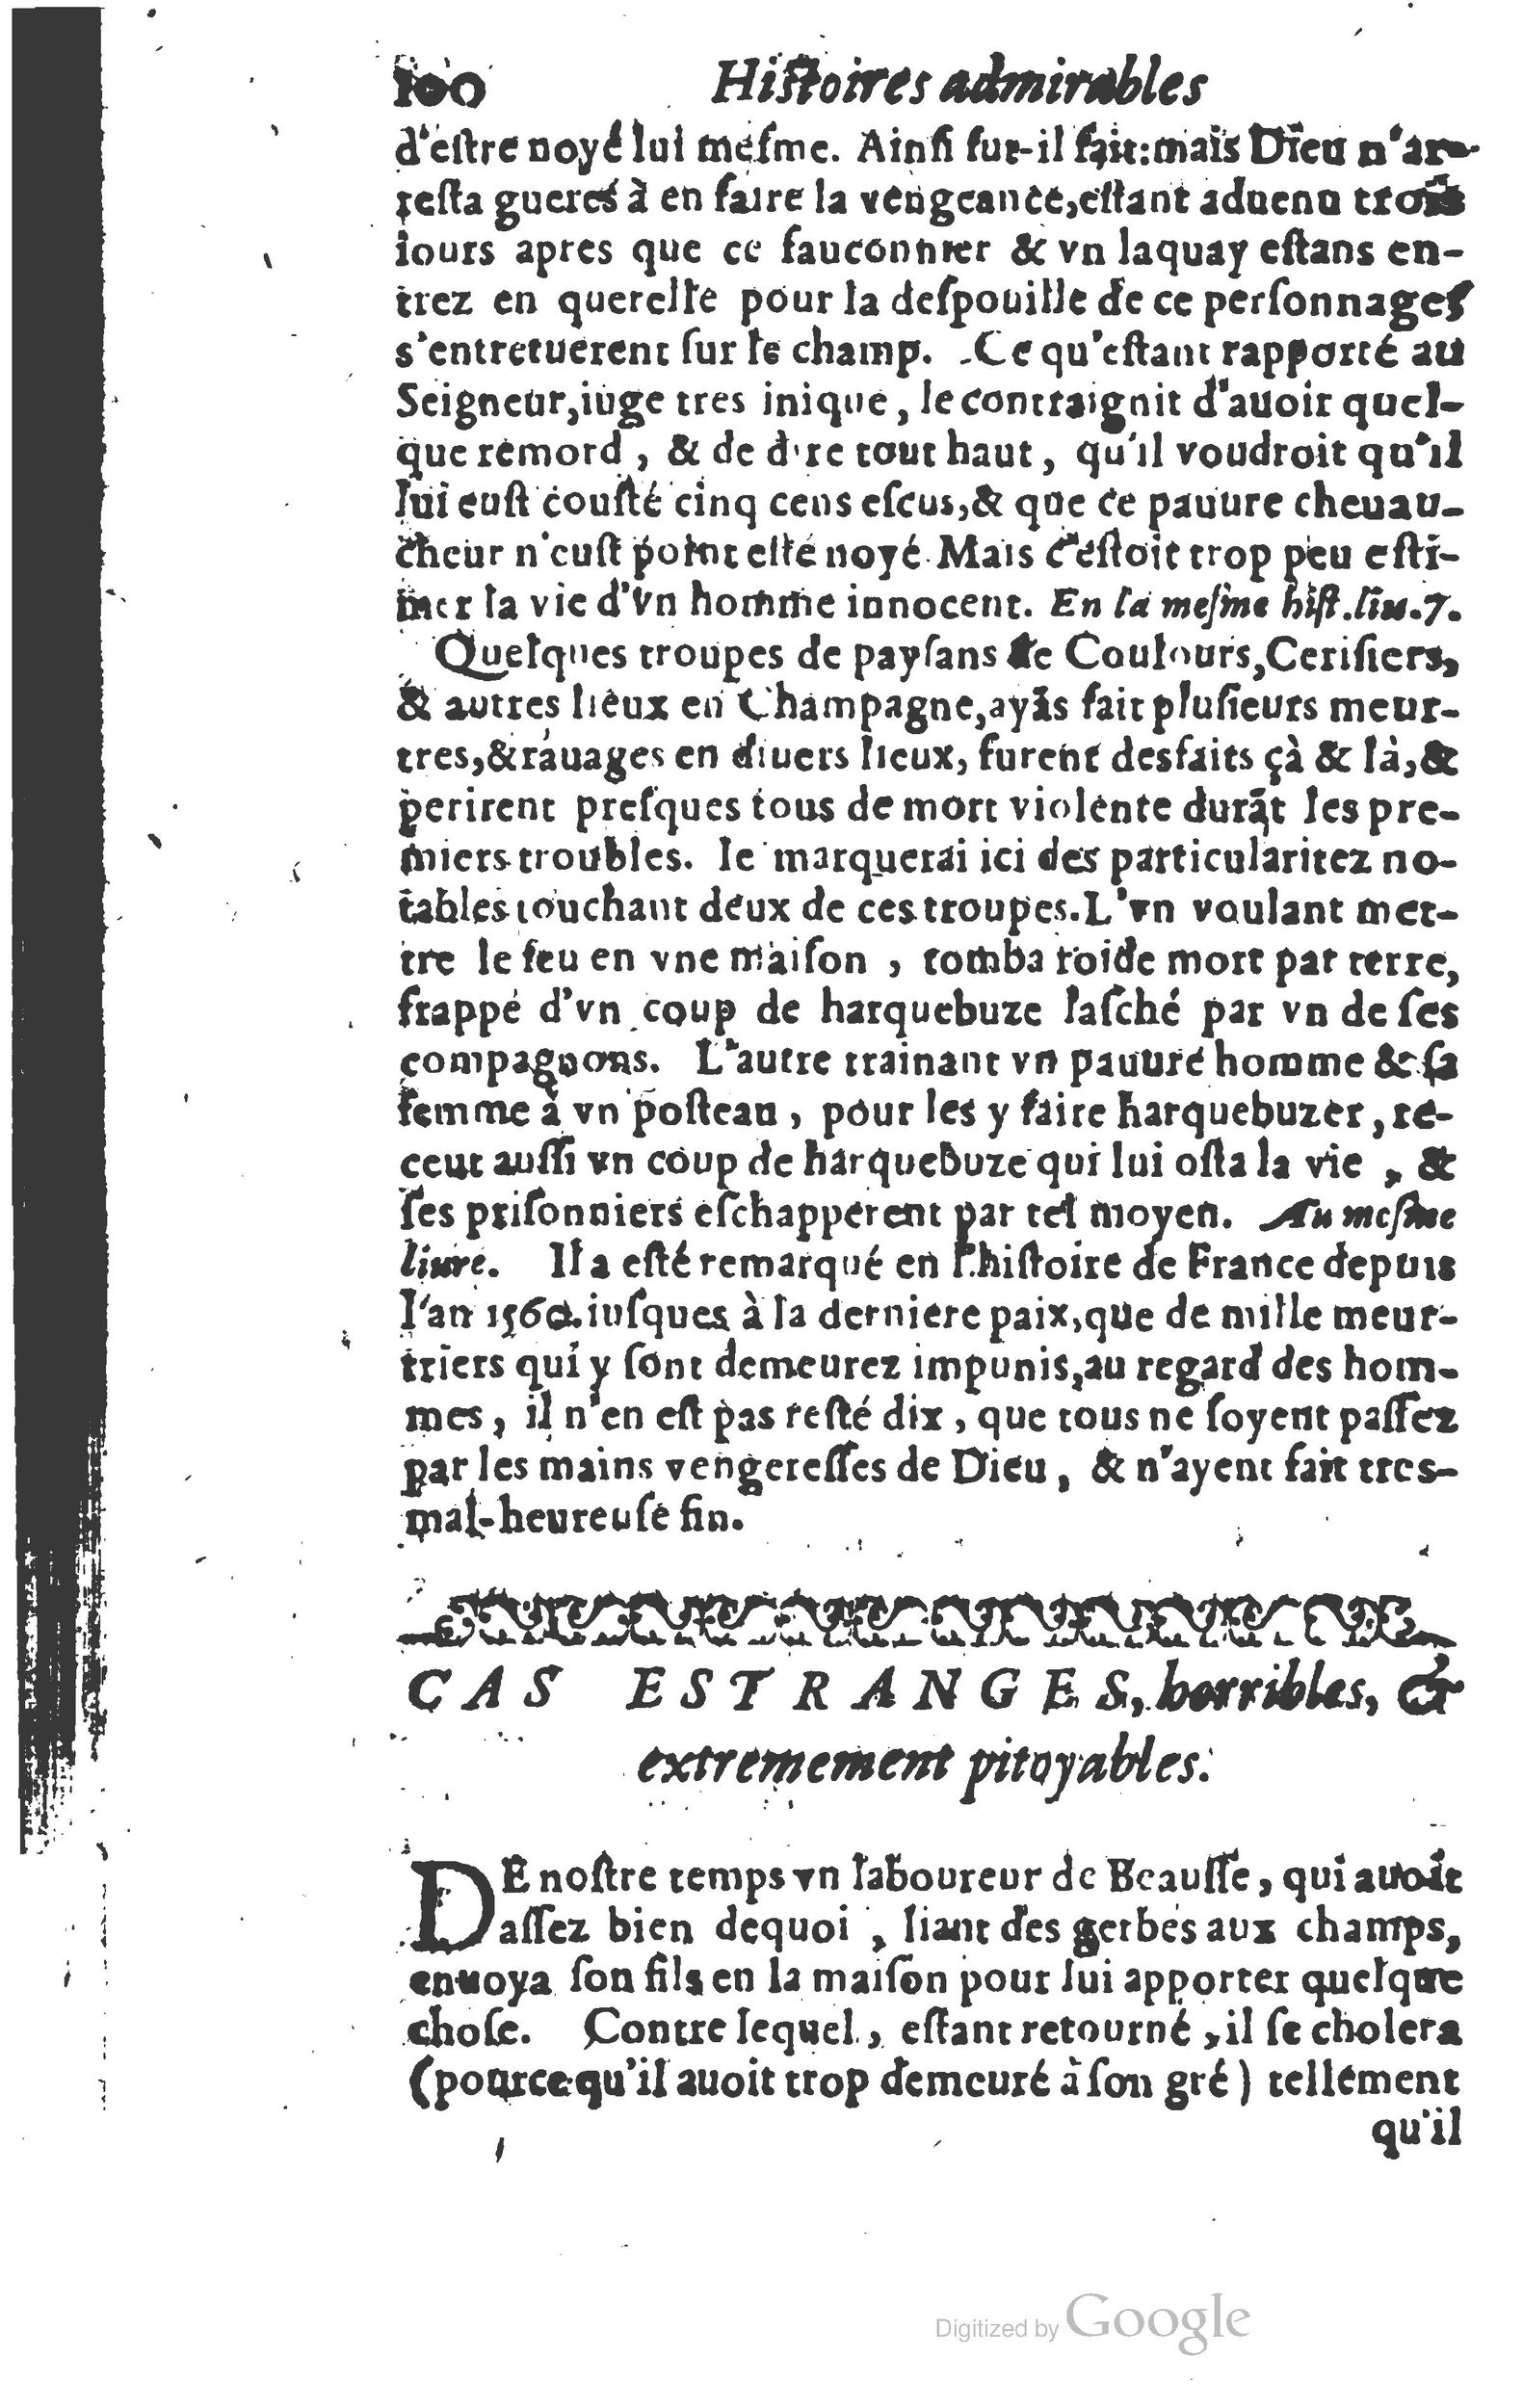 1610 Trésor d’histoires admirables et mémorables de nostre temps Marceau Princeton_Page_0121.jpg